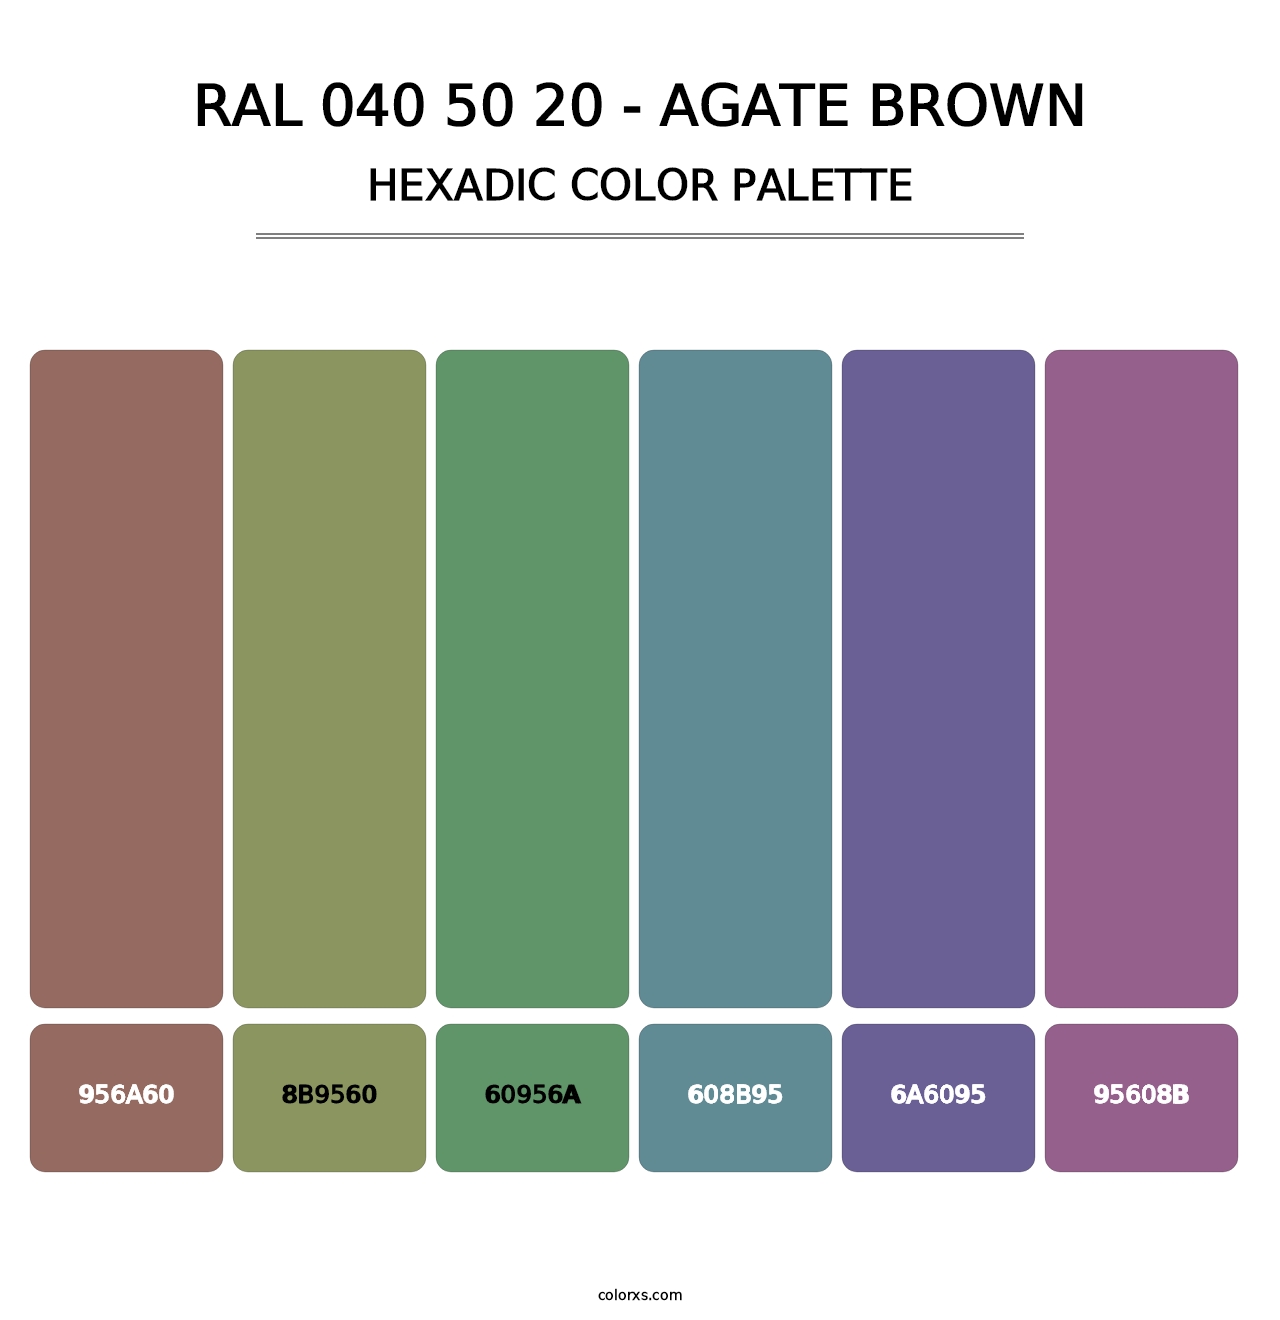 RAL 040 50 20 - Agate Brown - Hexadic Color Palette